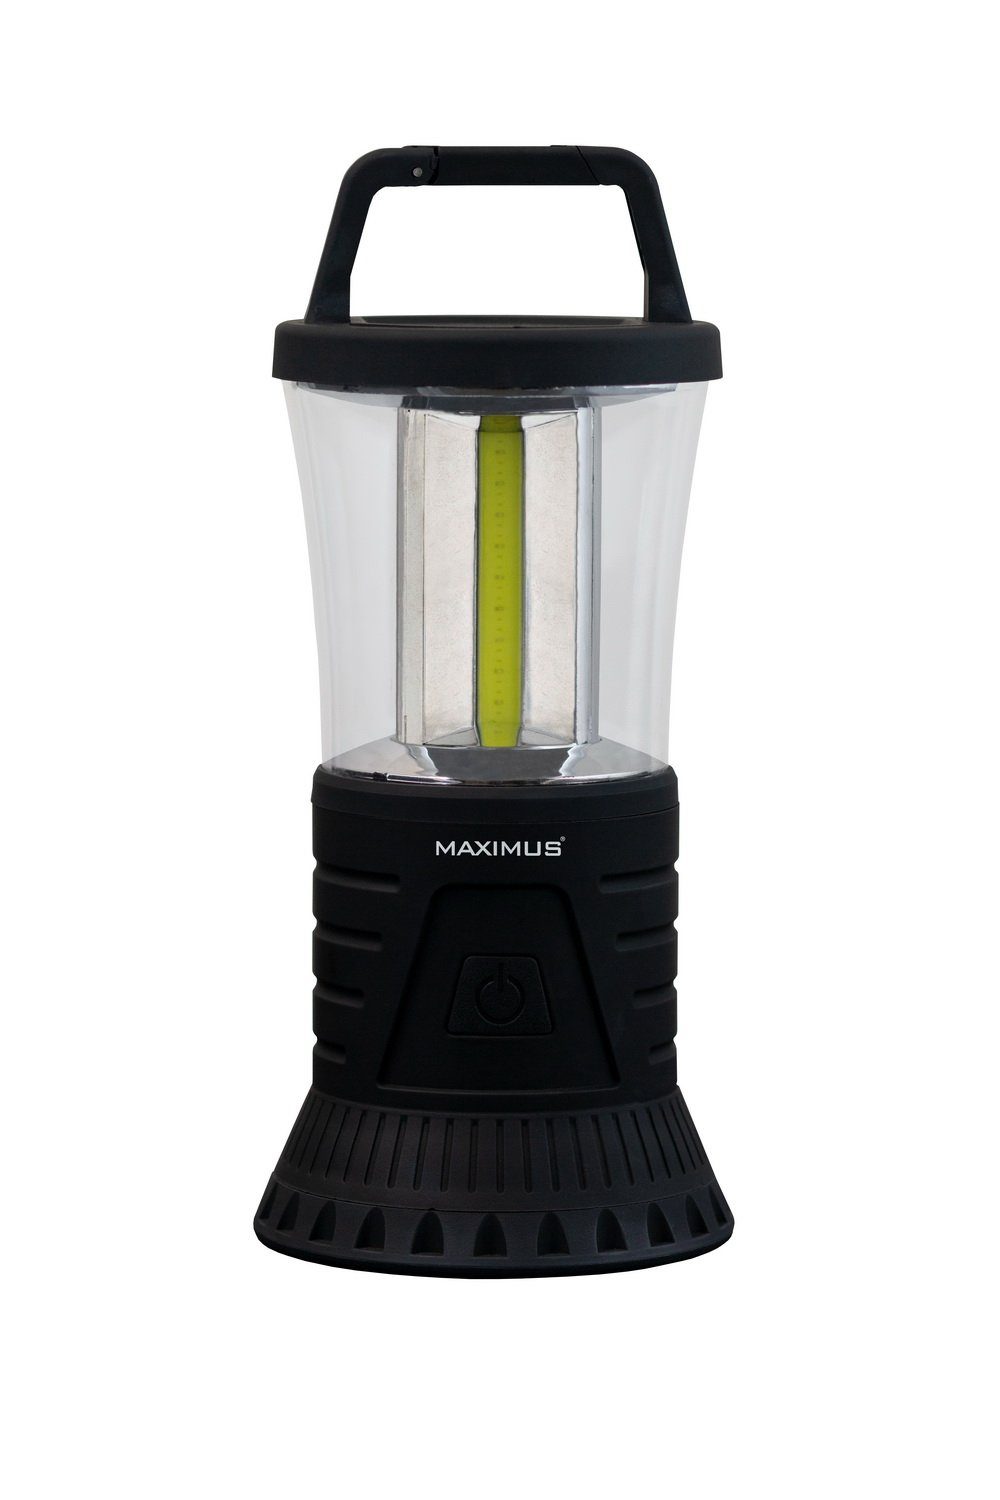 Maximus Laterne Campinglaterne Camping-Lampe 400 lm Campingleuchte Leuchte, mit intergriertem Haken zum Aufhängen